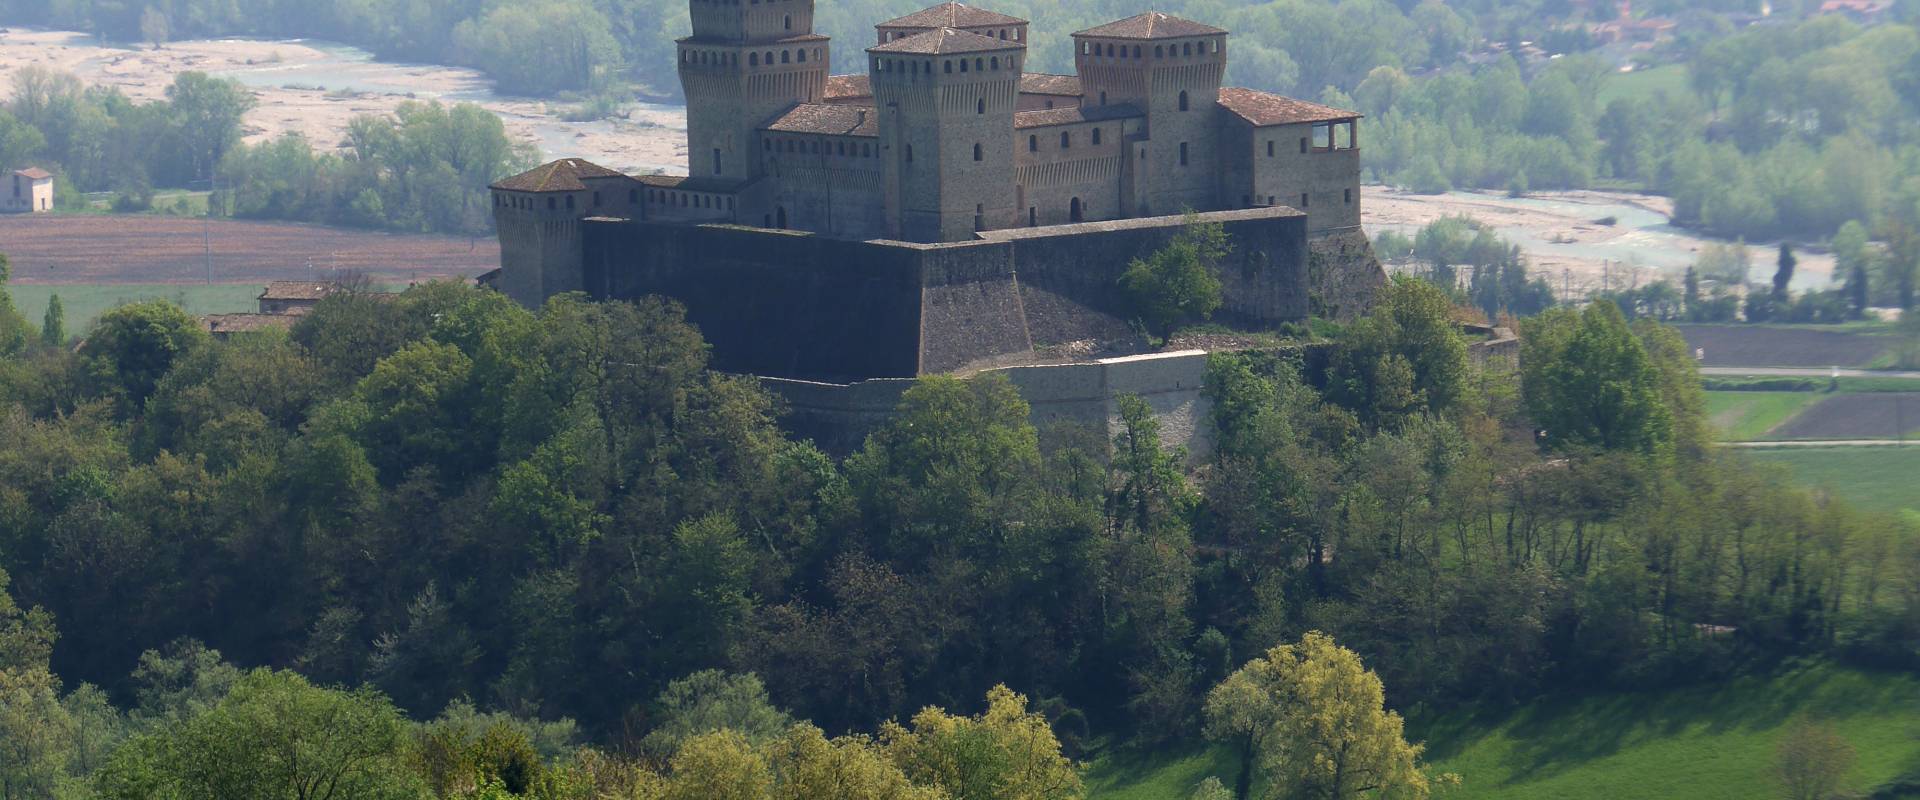 Torrechiara-Castello photo by Massimo Telò